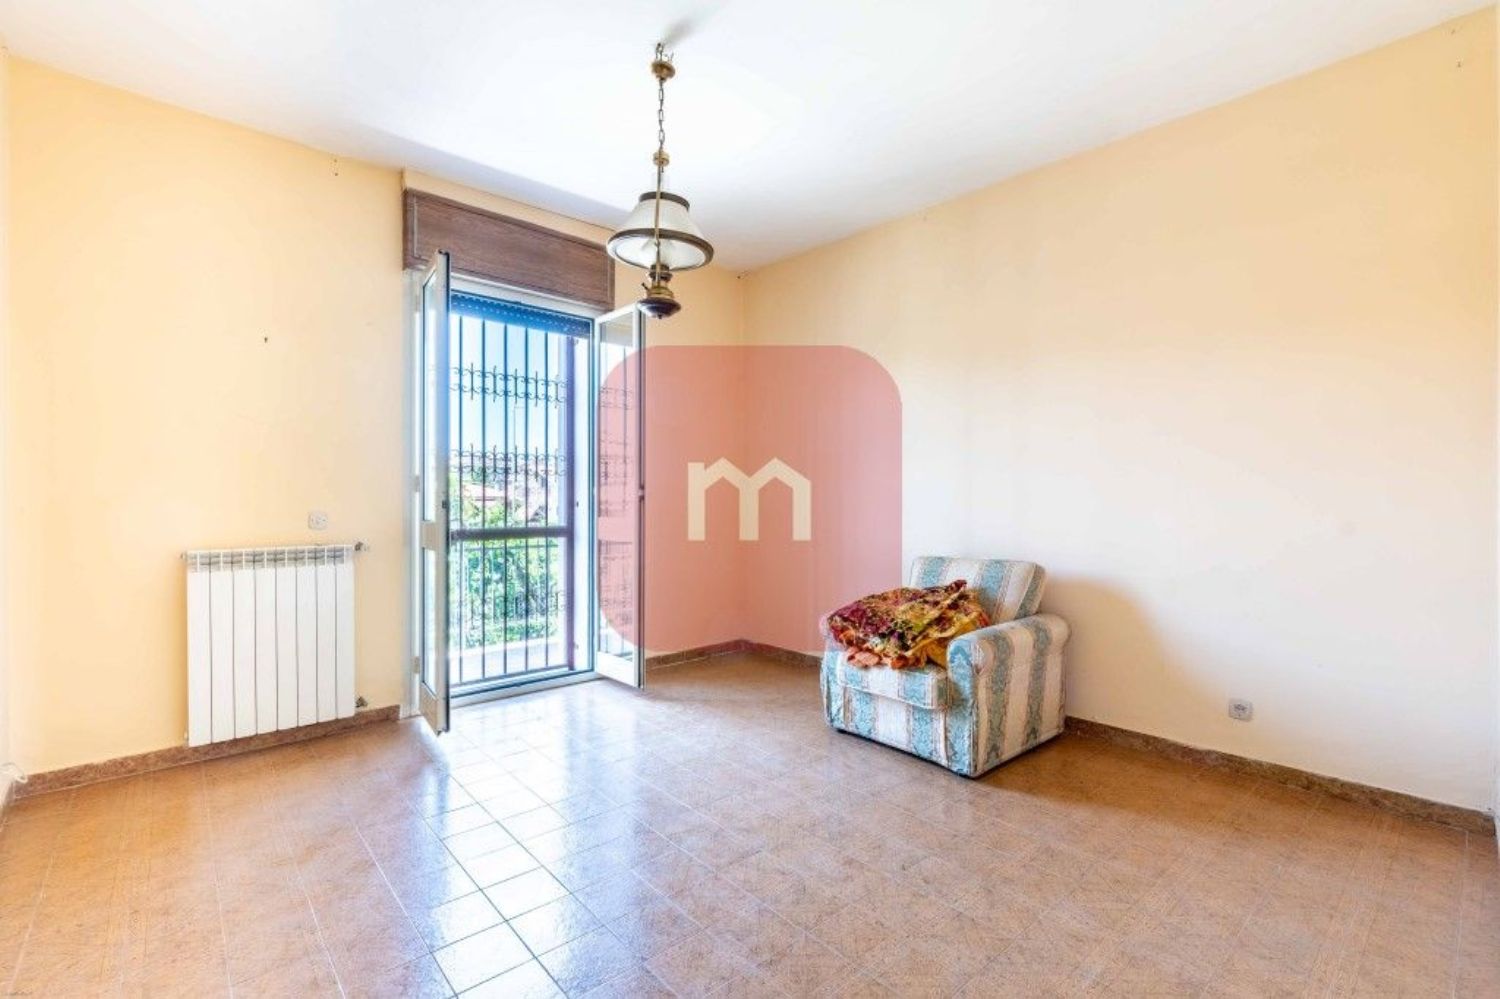 Villa Bifamiliare in vendita a Roma, 5 locali, prezzo € 329.000 | CambioCasa.it